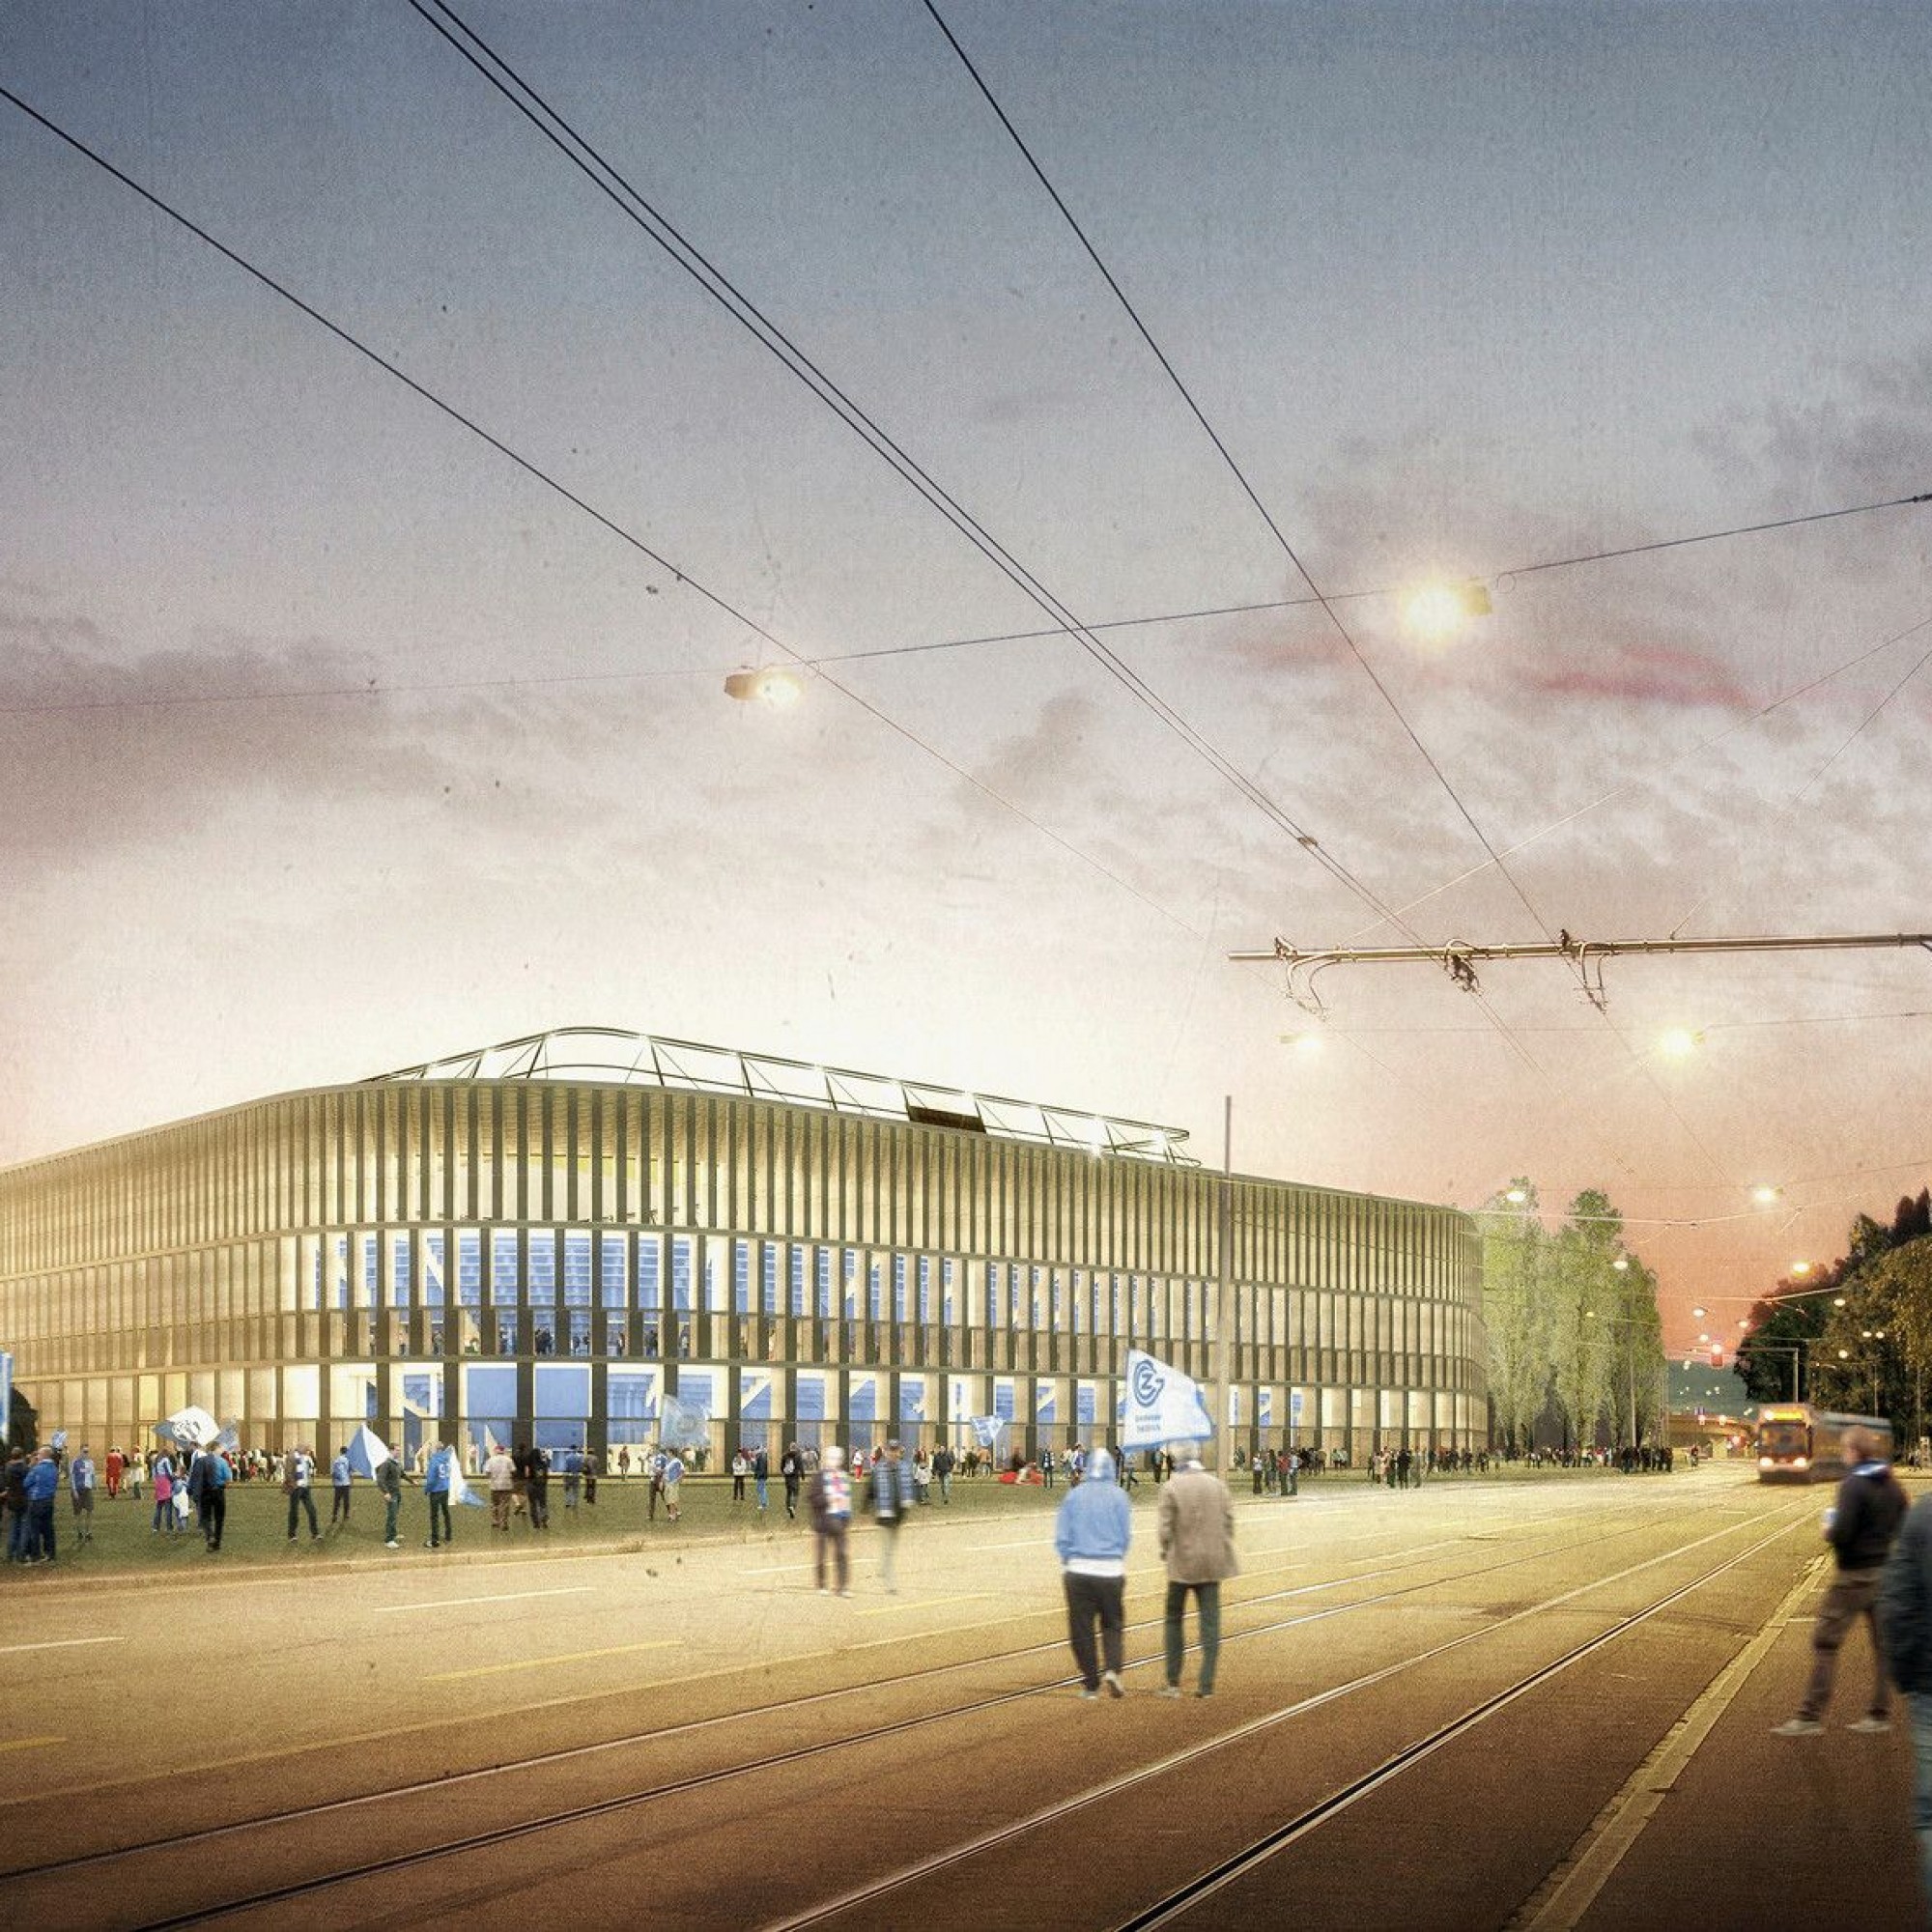 Visualisierung von neuem Hardturmstadion in Zürich